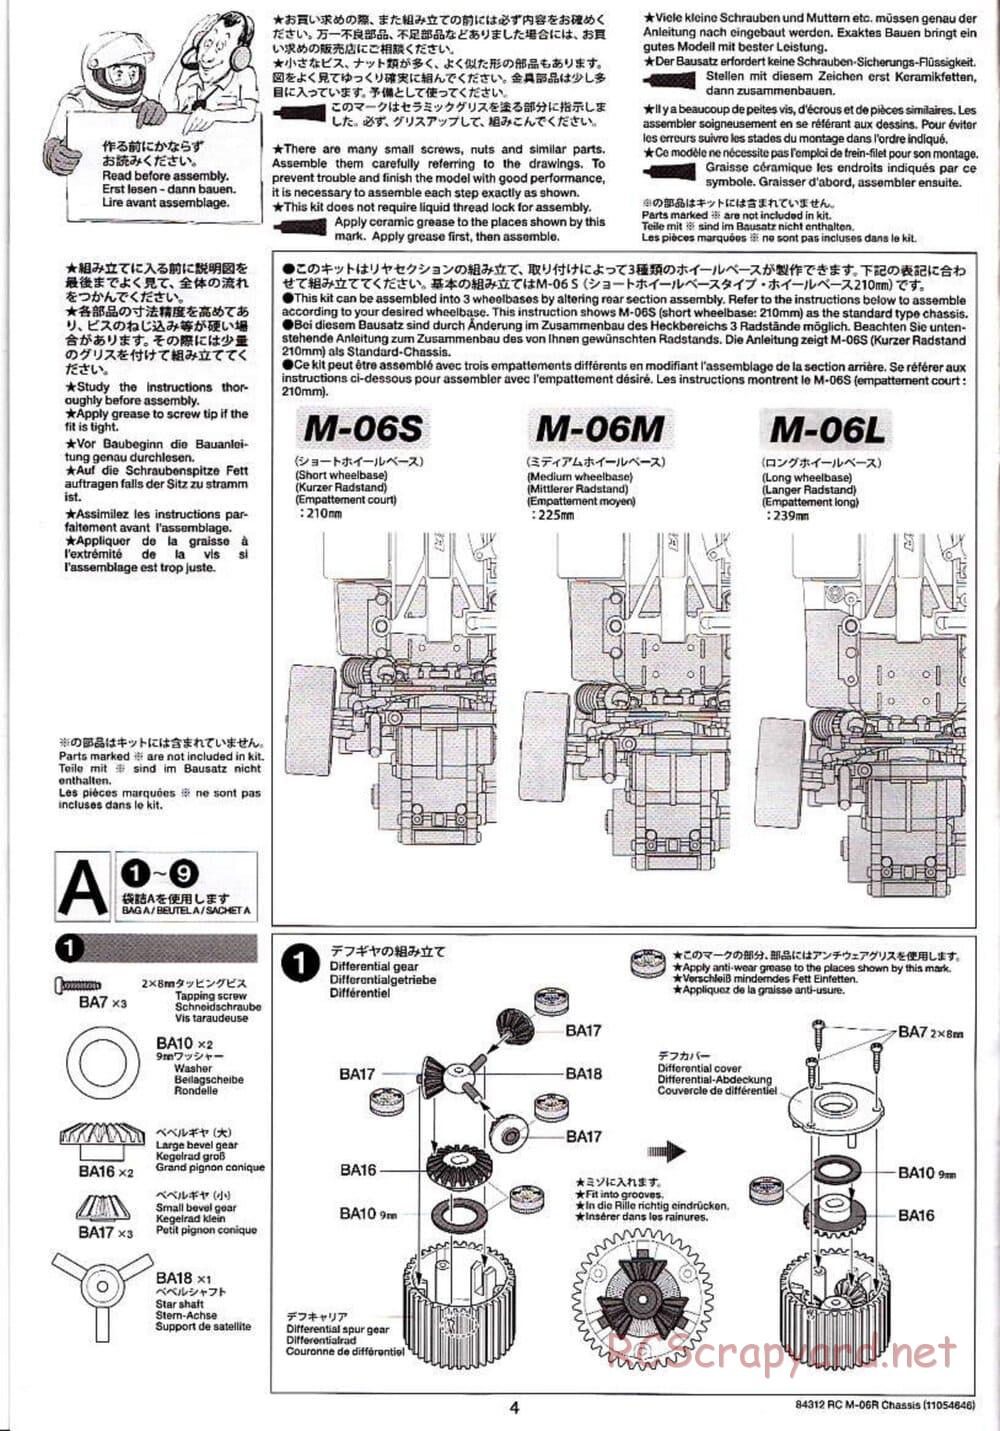 Tamiya - M-06R Chassis - Manual - Page 4